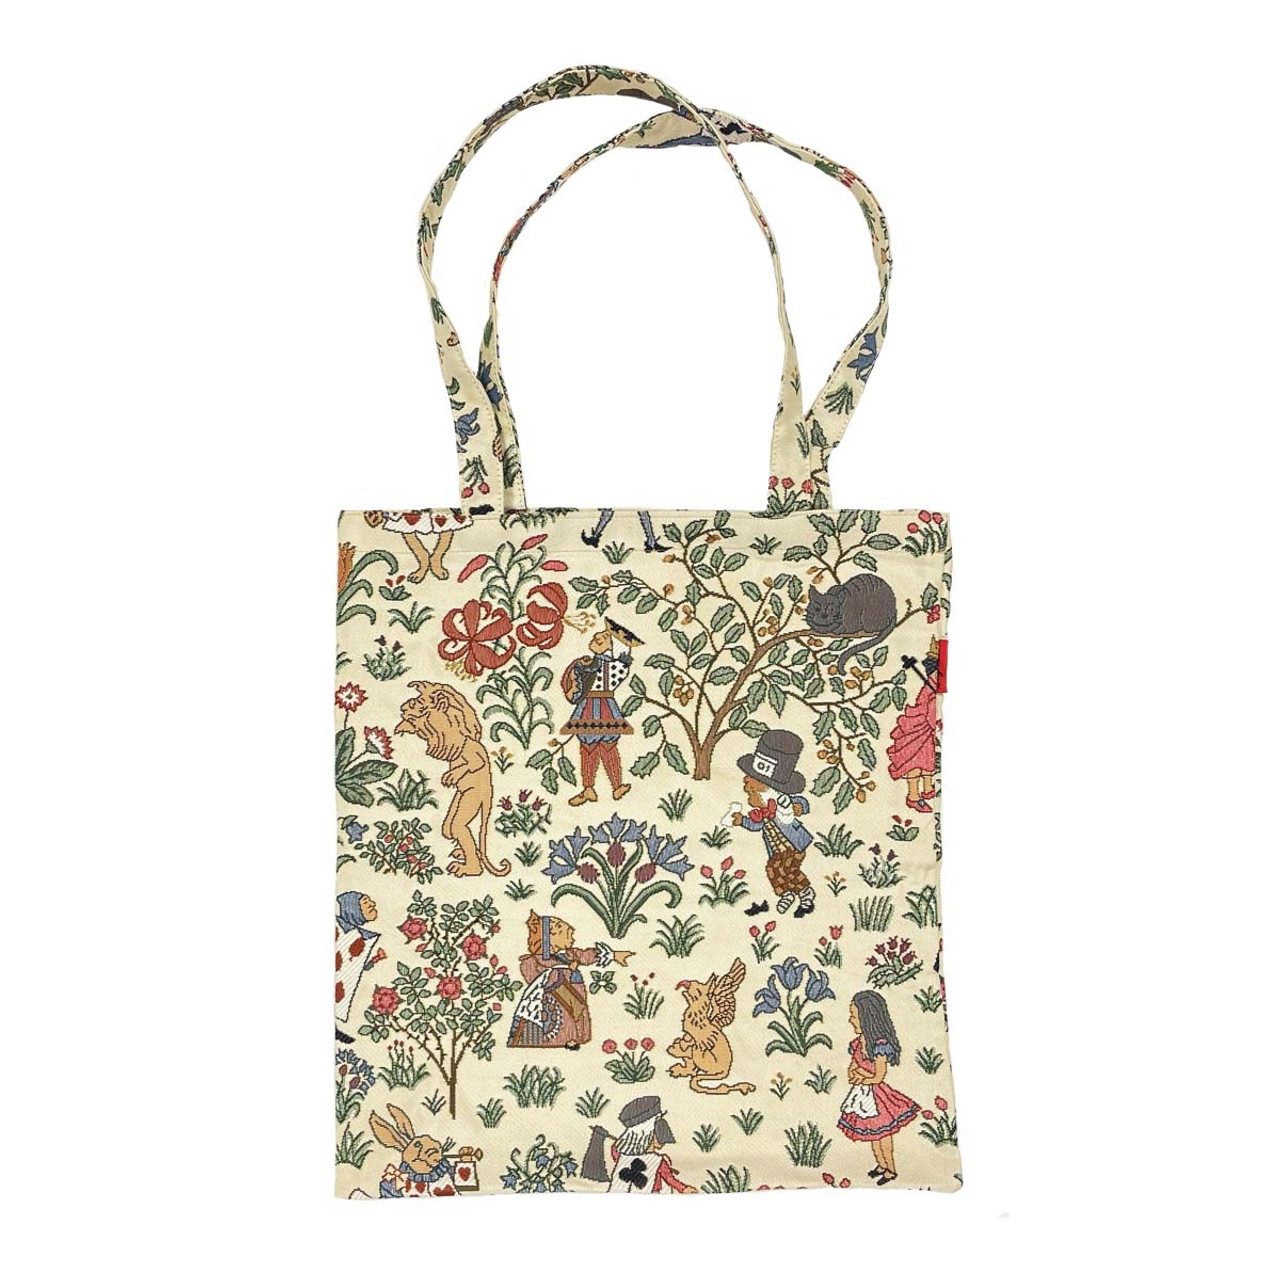 Vintage 1950s Tapestry Needlepoint Handbag - Unused